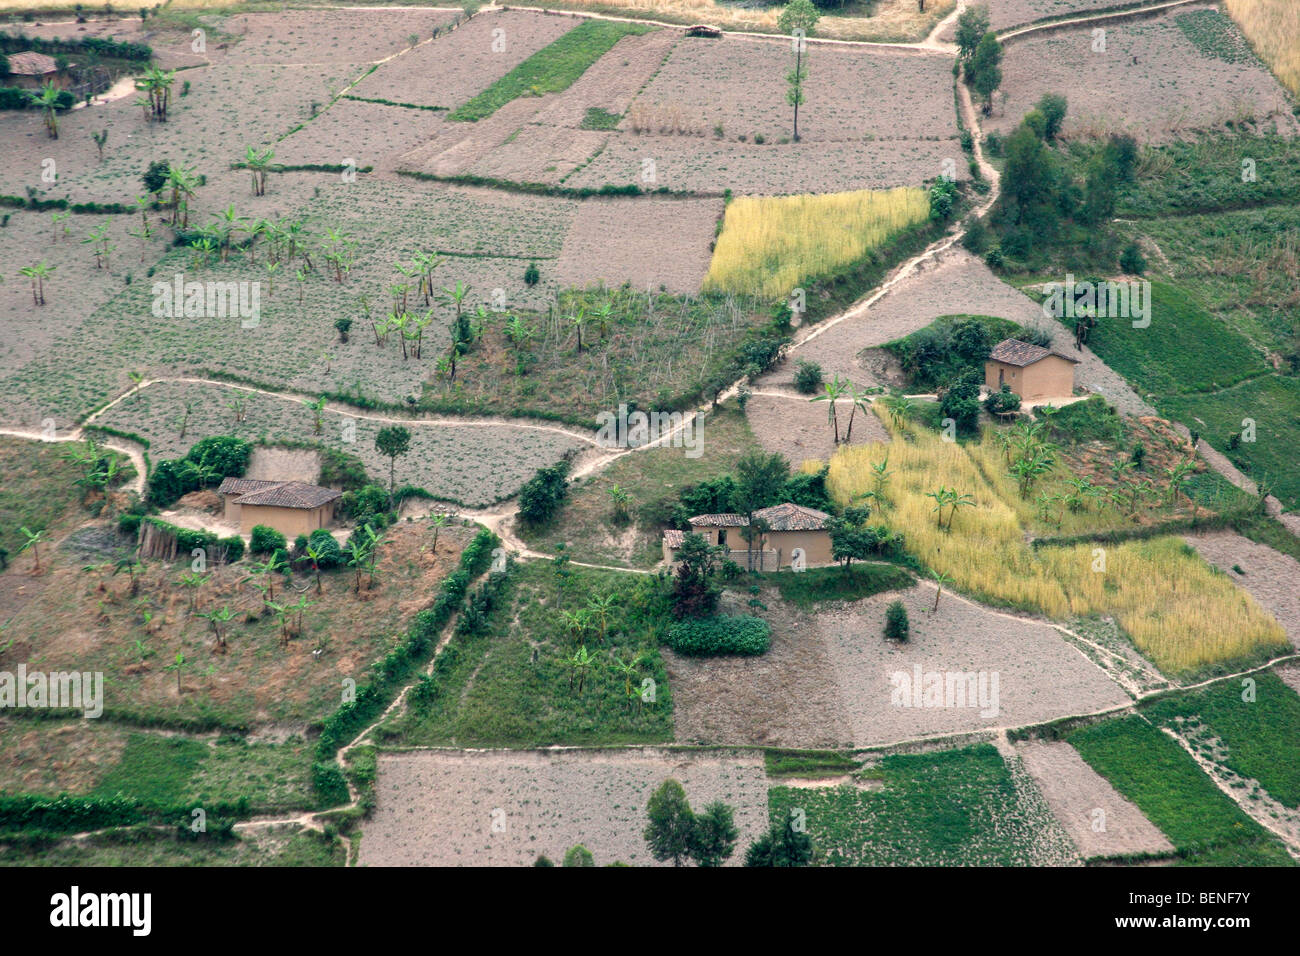 Les terres agricoles avec des champs et fermes après le déboisement de forêt tropicale dans les collines, le Rwanda, l'Afrique Centrale Banque D'Images